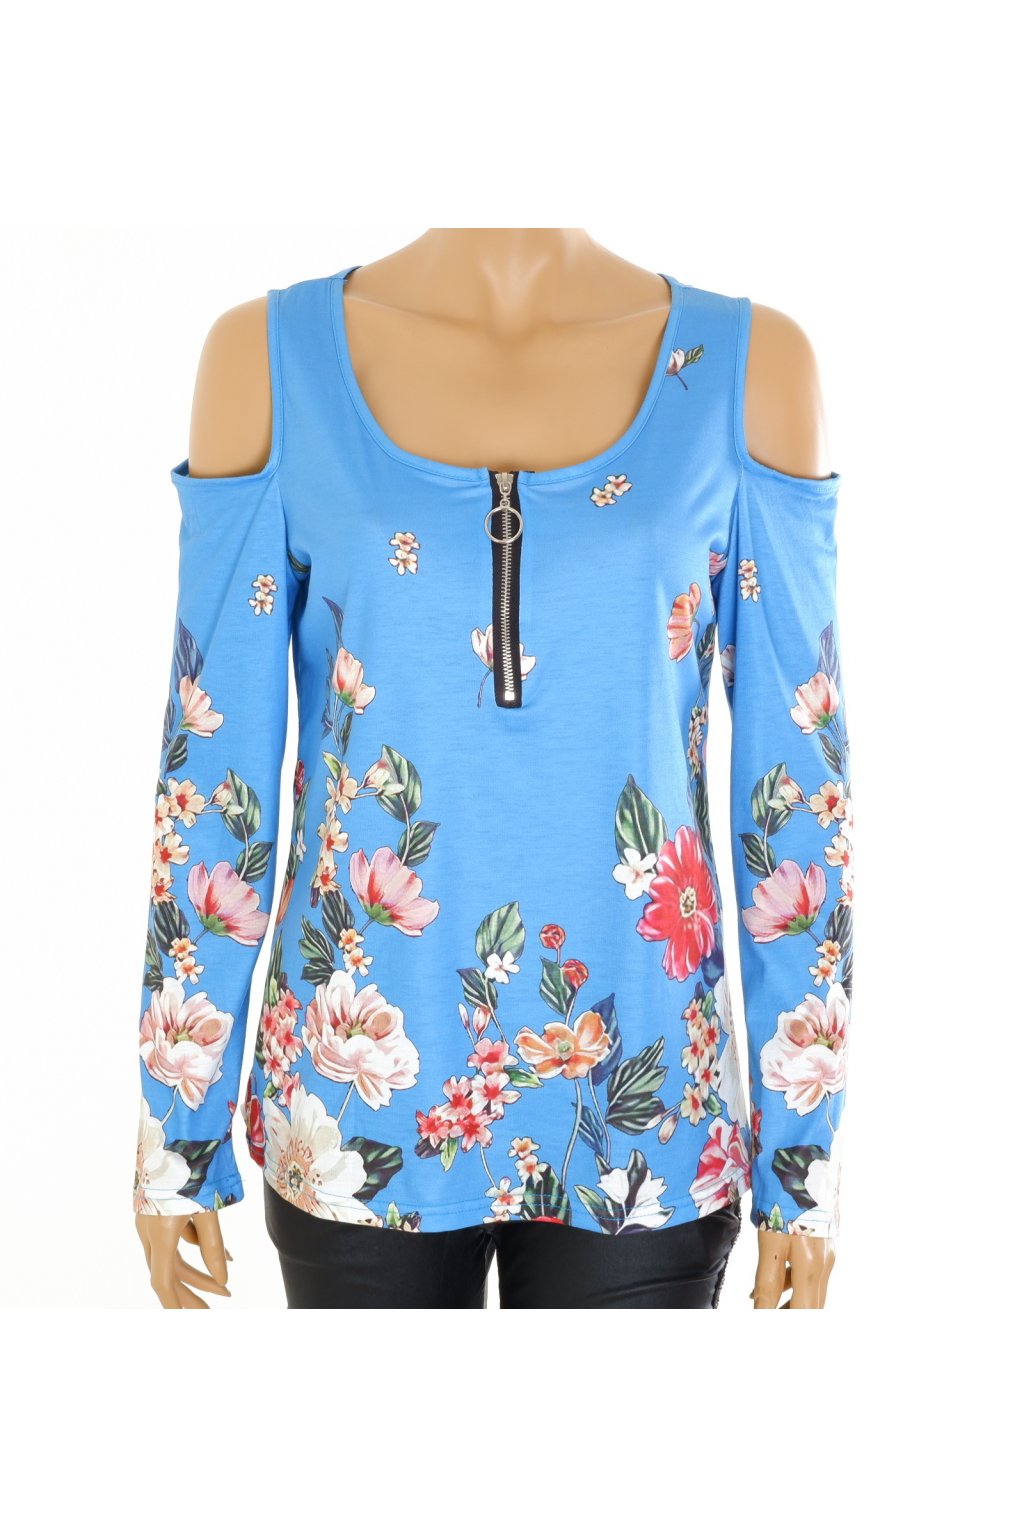 Tričko modré s barevnými květy se zipem volná ramena vel. S - M - Second  hand online AXEL